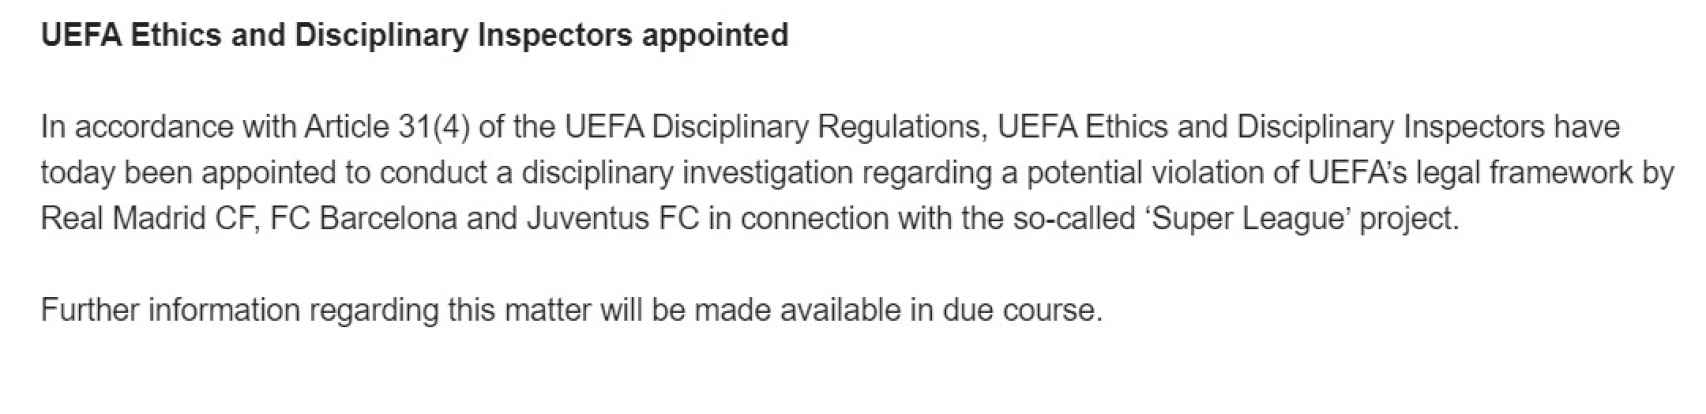 El comunicado de UEFA anunciando el inicio de la investigación contra los clubes de la Superliga